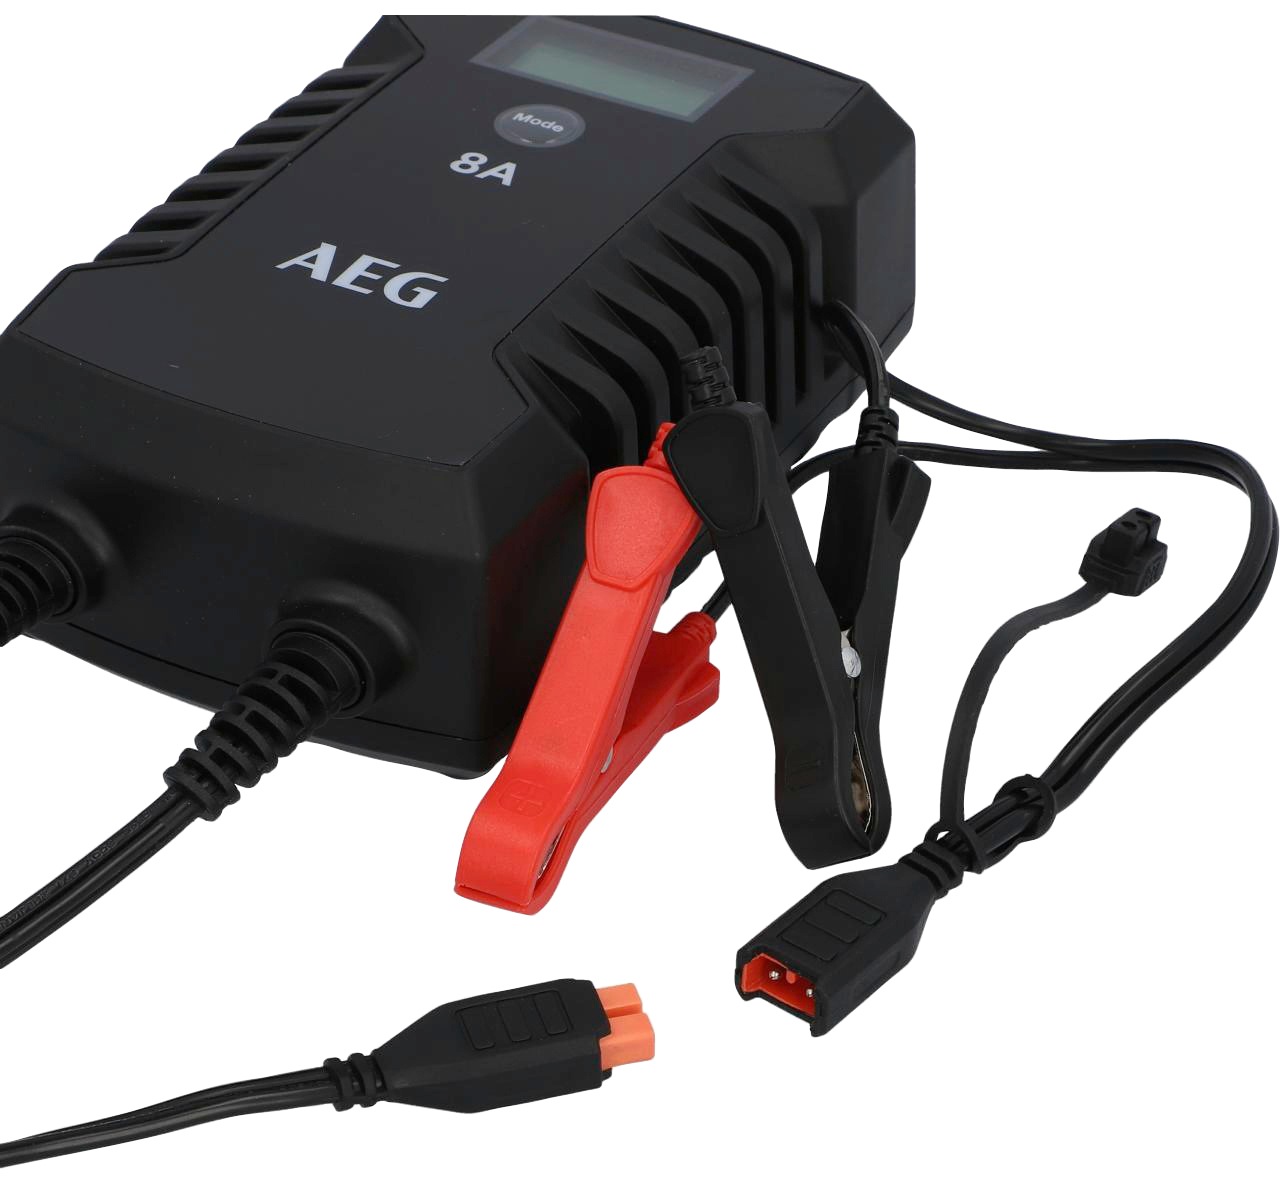 AEG Autobatterie-Ladegerät »LD8«, 8000 mA, IP66